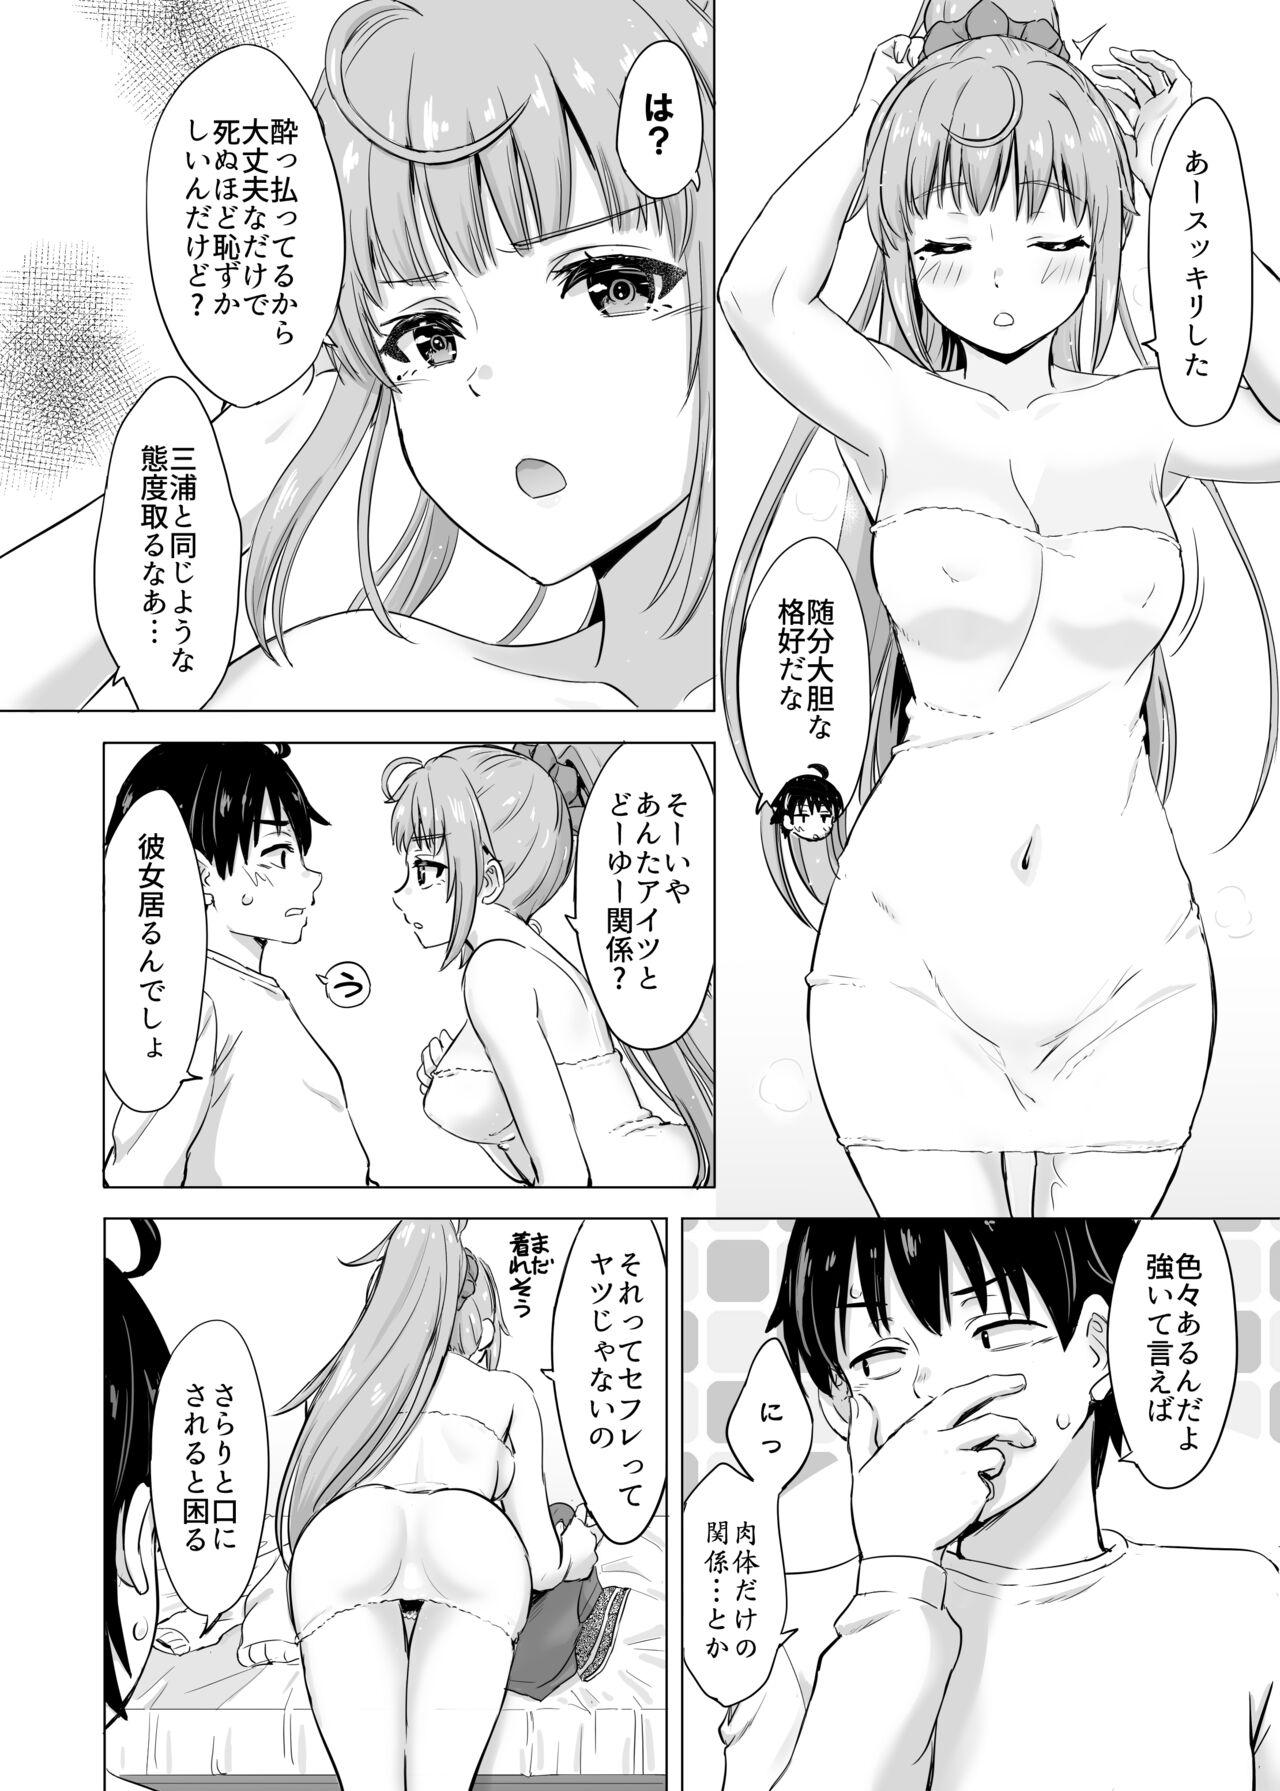 Madura あーしさんサキサキ漫画 - Yahari ore no seishun love come wa machigatteiru Free Blow Job Porn - Page 7